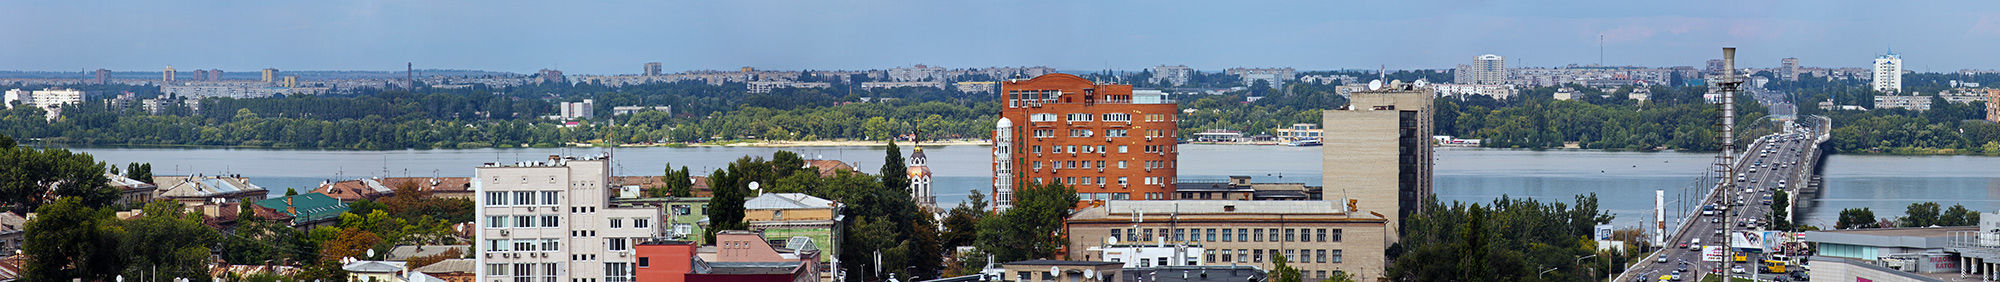 Фотообои Днепропетровск панорамный вид (city-0000944)